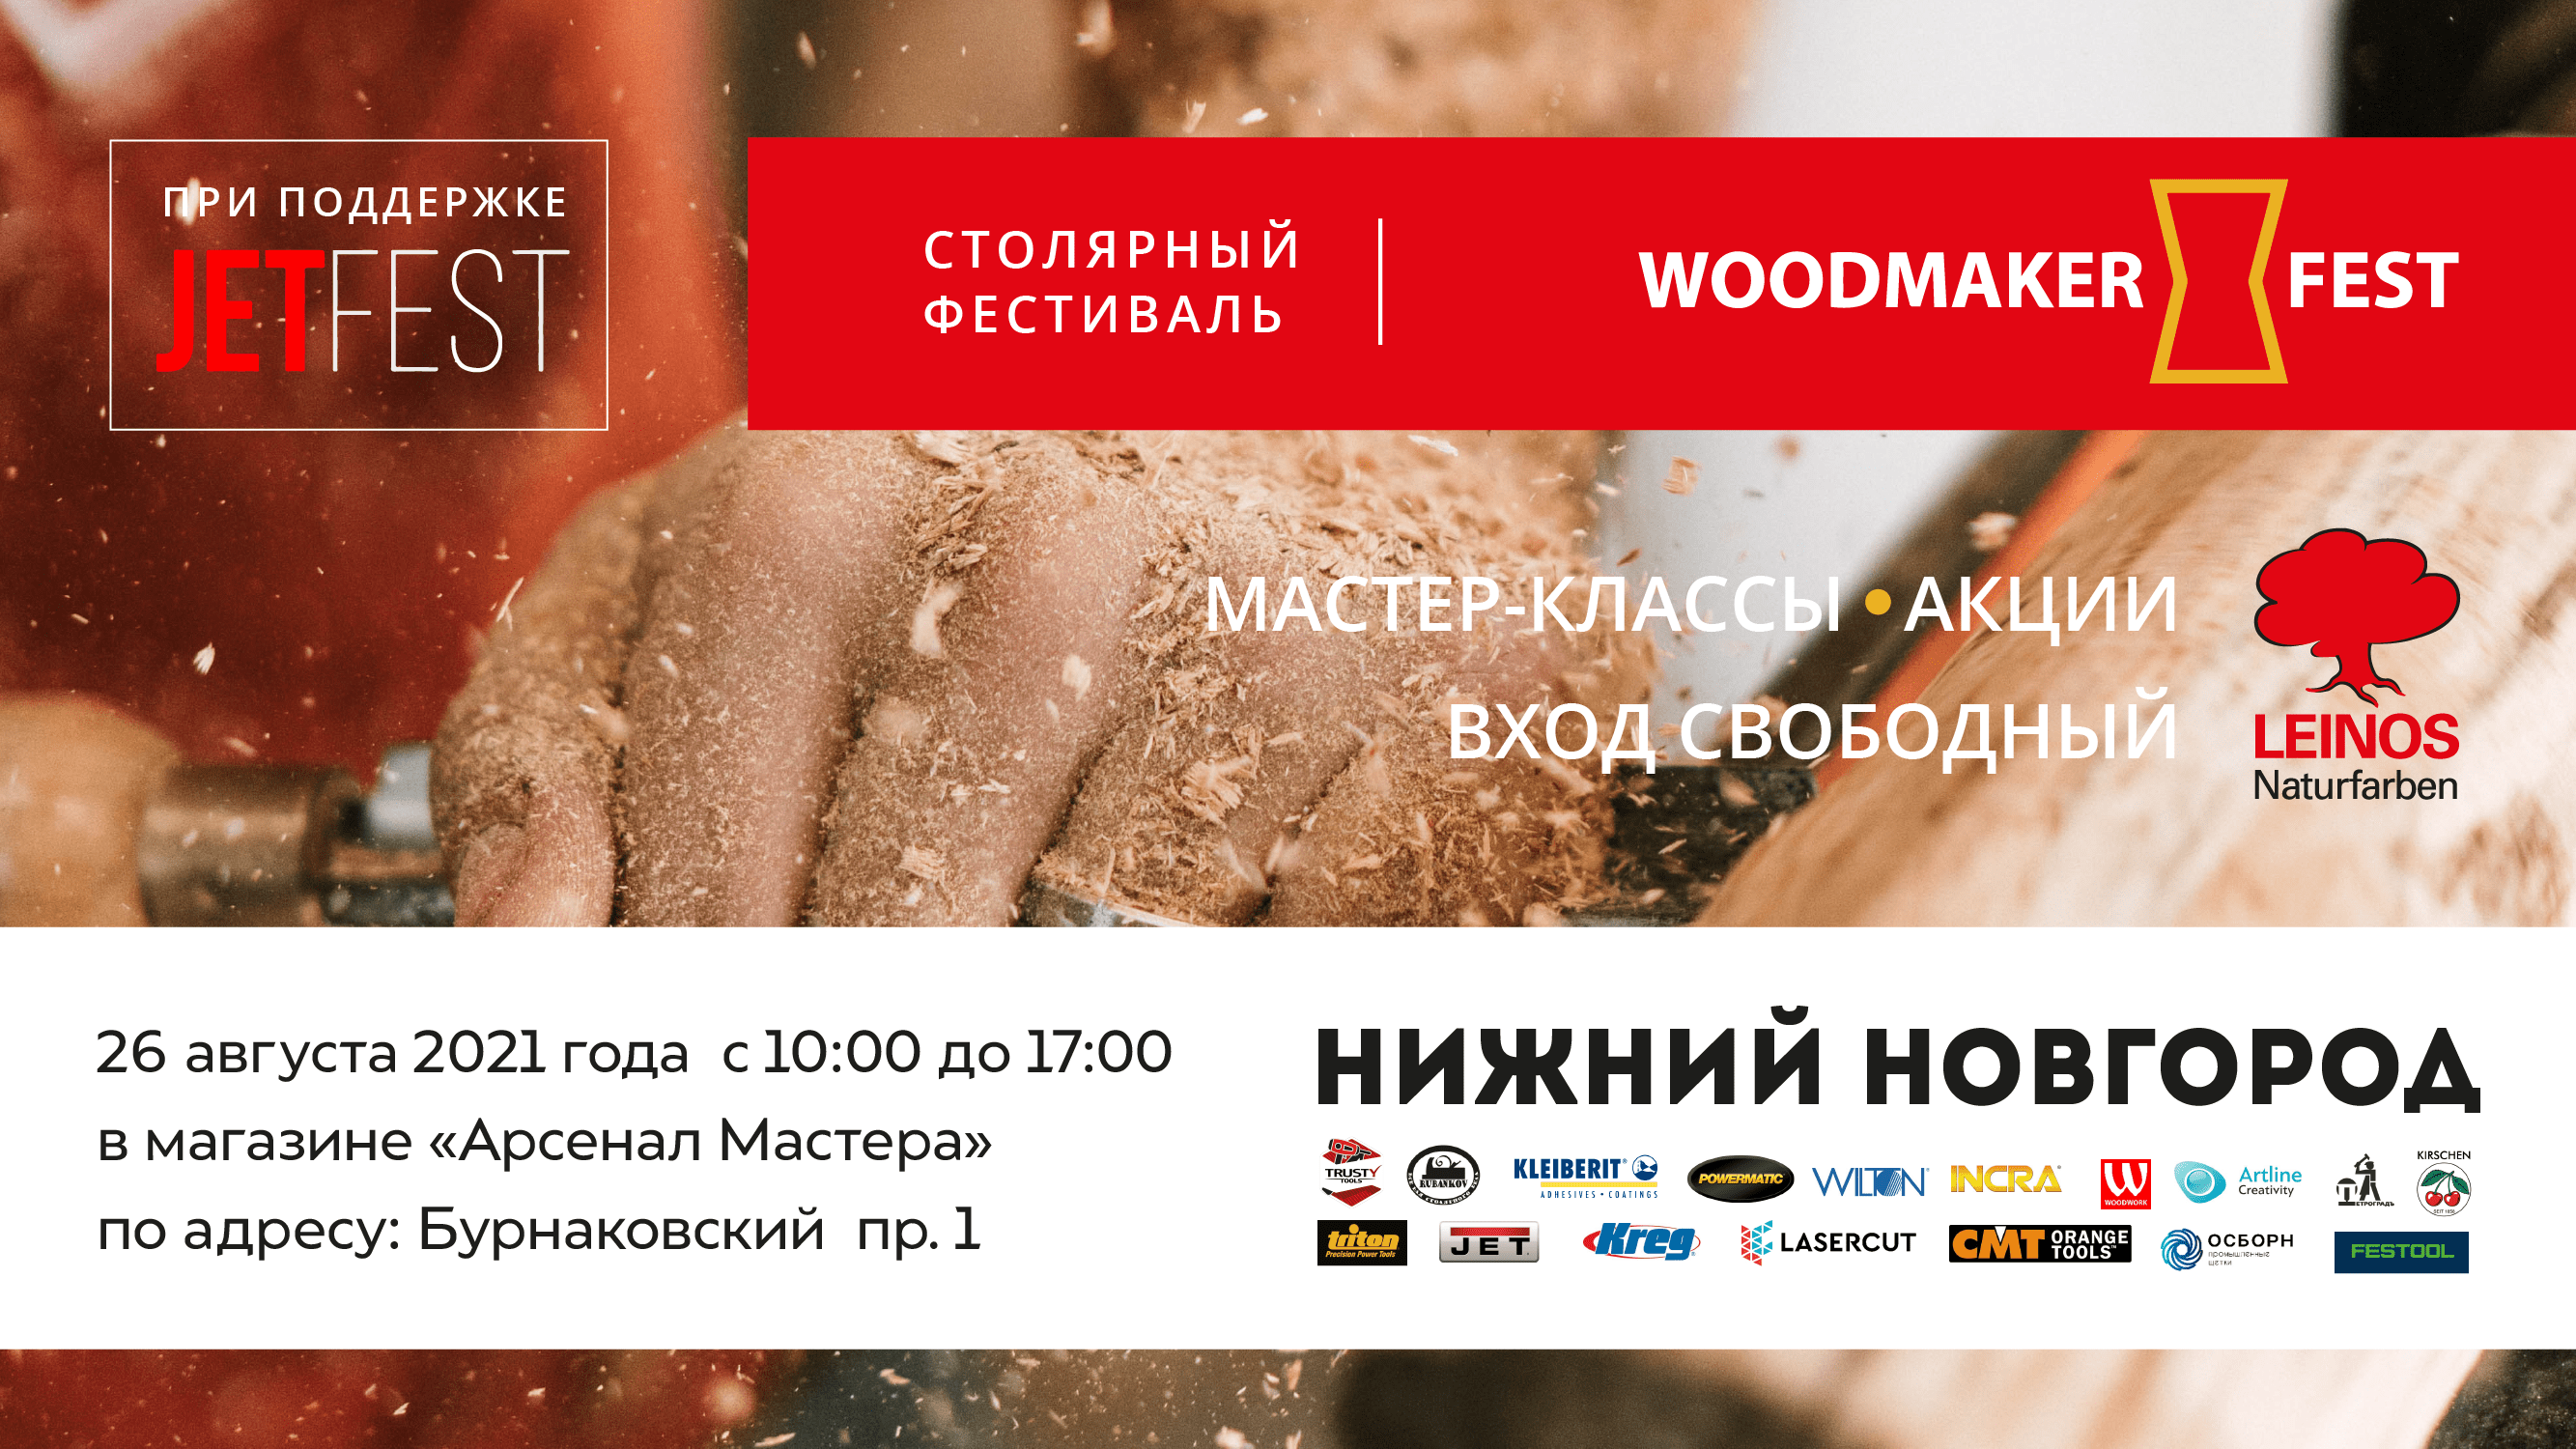 Столярный фестиваль WOODMAKER Fest в Нижнем Новгороде 